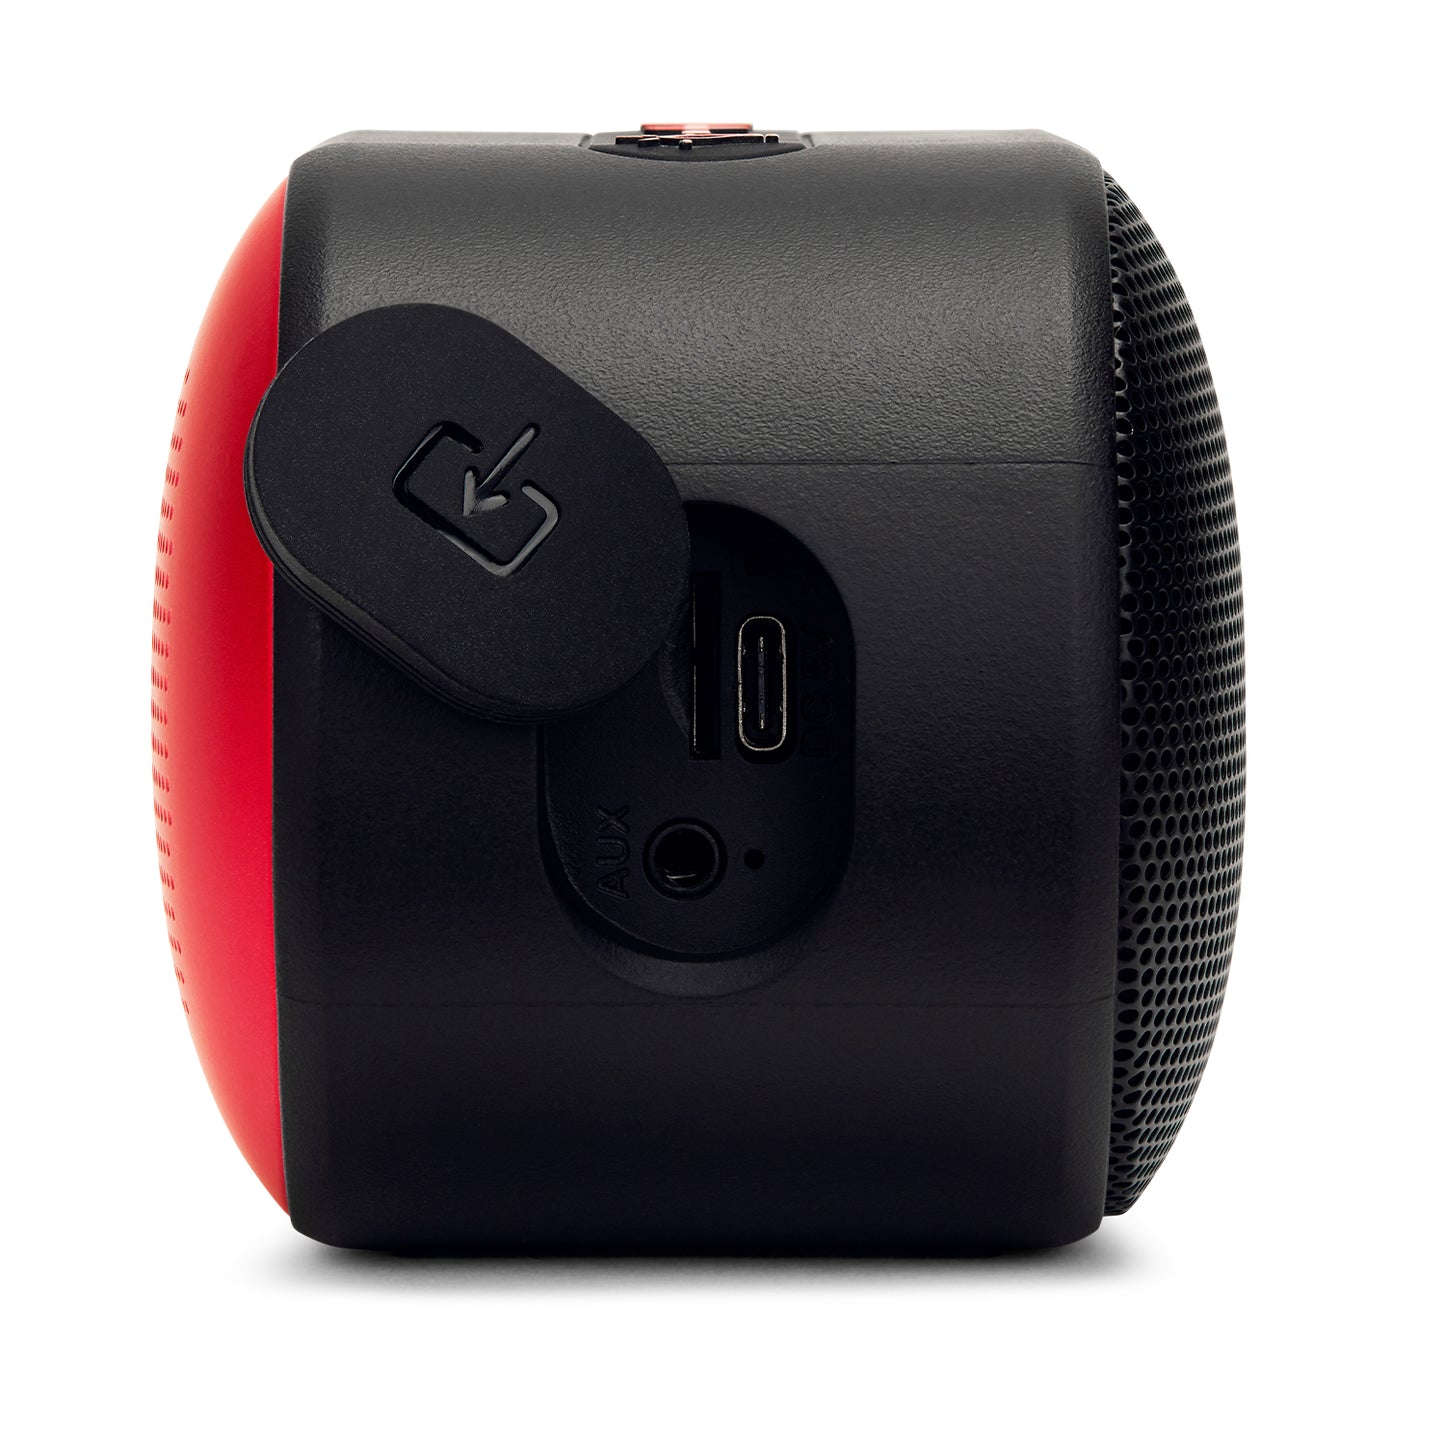 Pārnēsājams Bluetooth skaļrunis, jaudīga 10W audio izeja, Aiwa BST-330RD Red